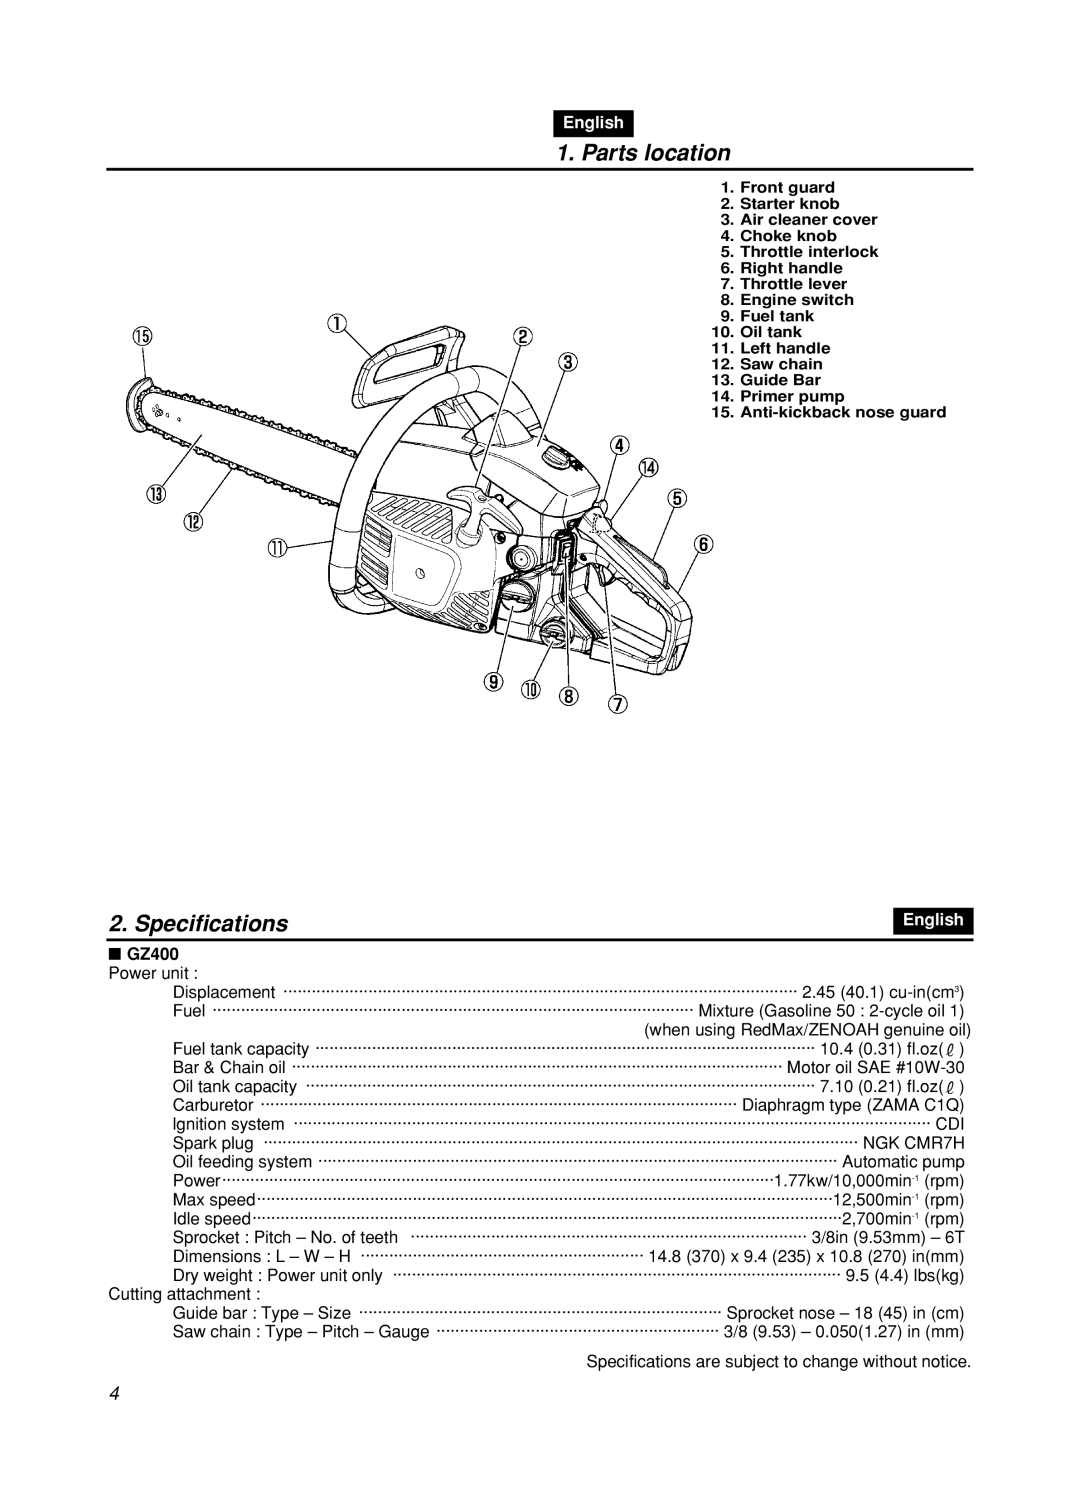 Zenoah GZ400 manual Parts location, Specifications, English 